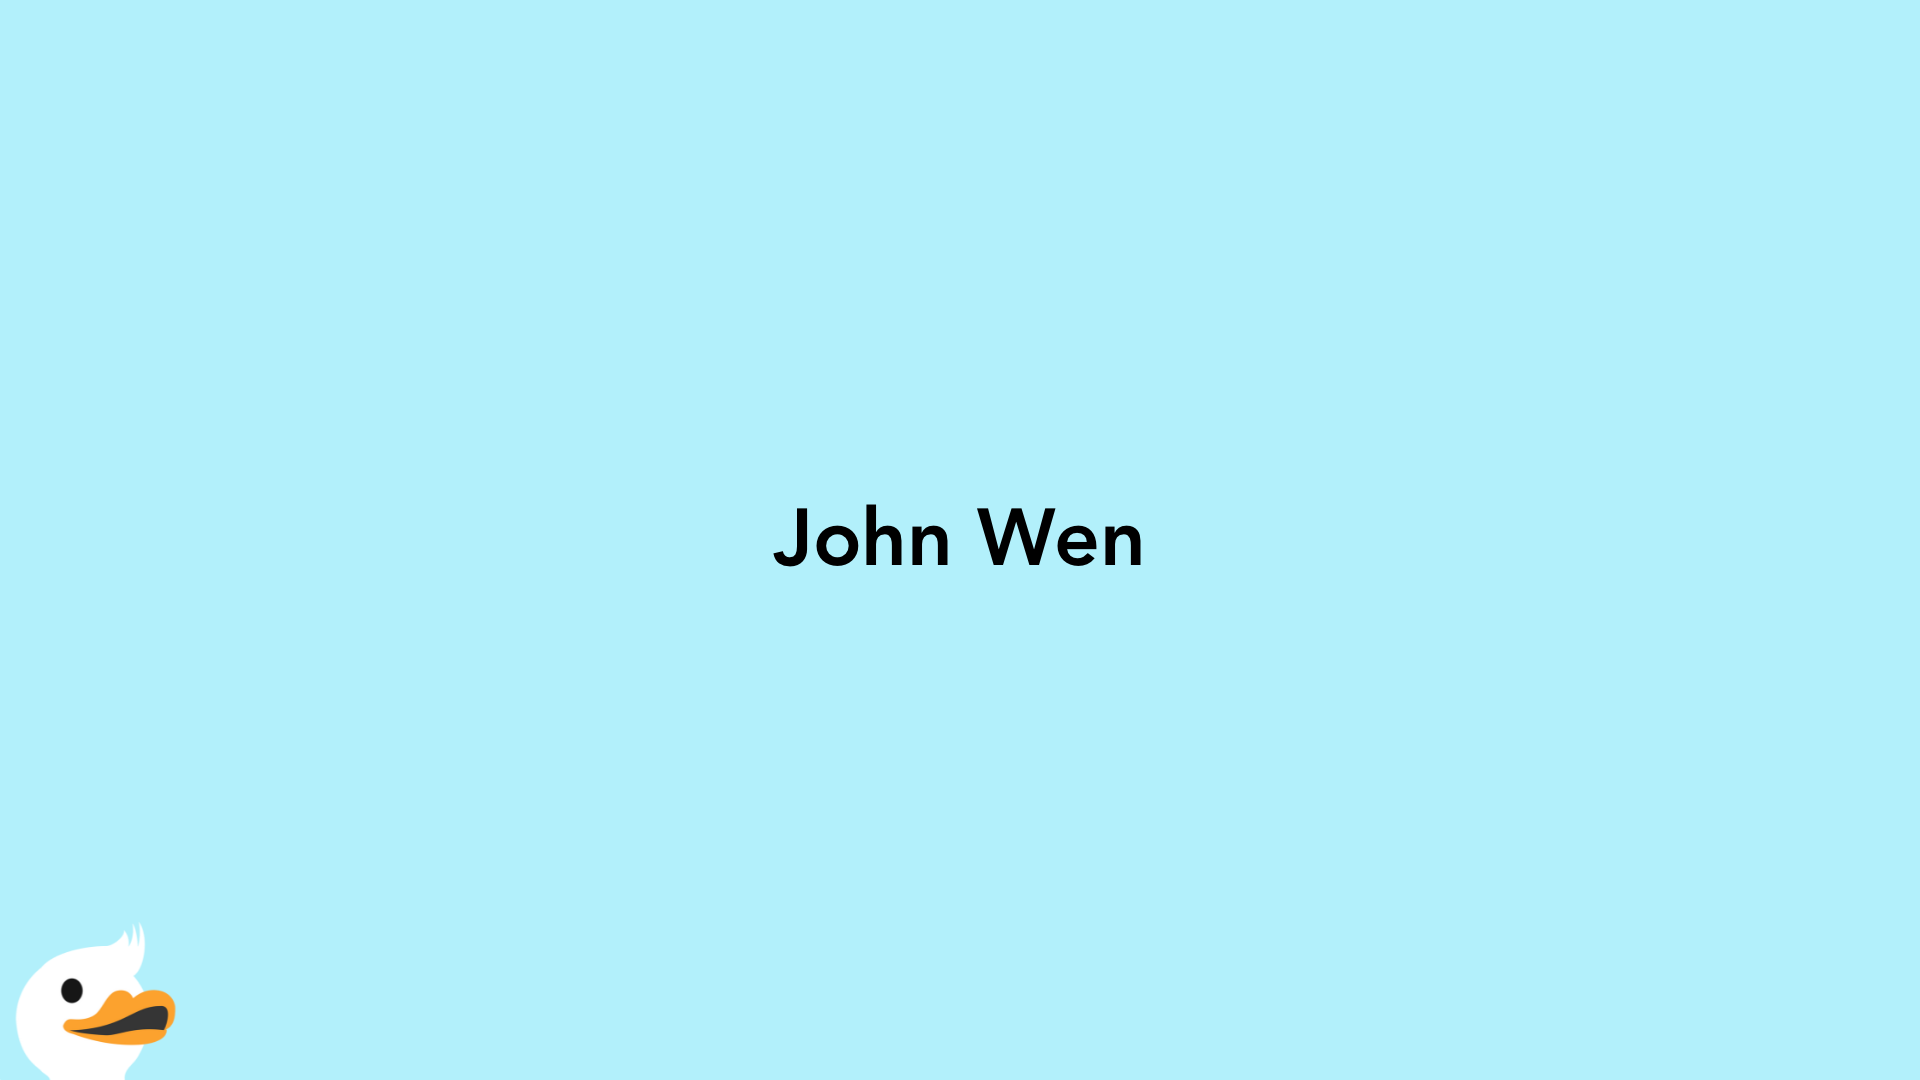 John Wen